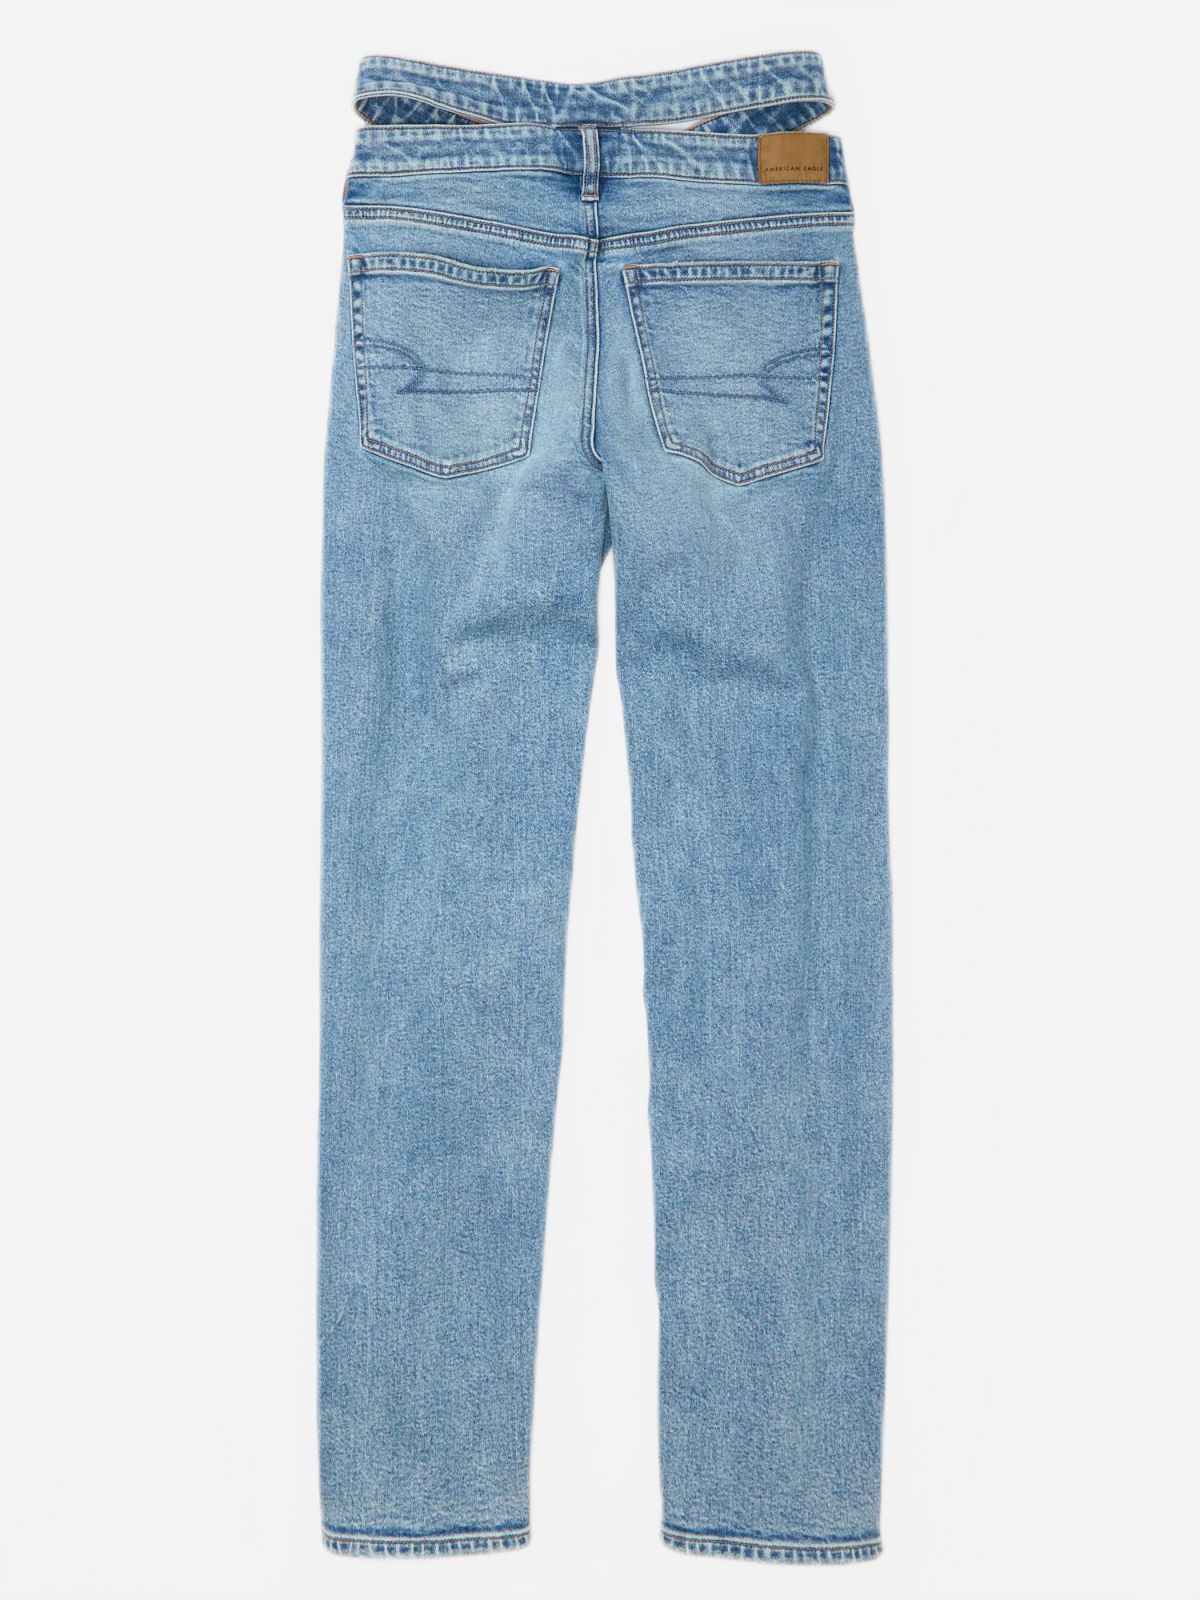  ג'ינס עם רצועת חגורה נפרדת של AMERICAN EAGLE